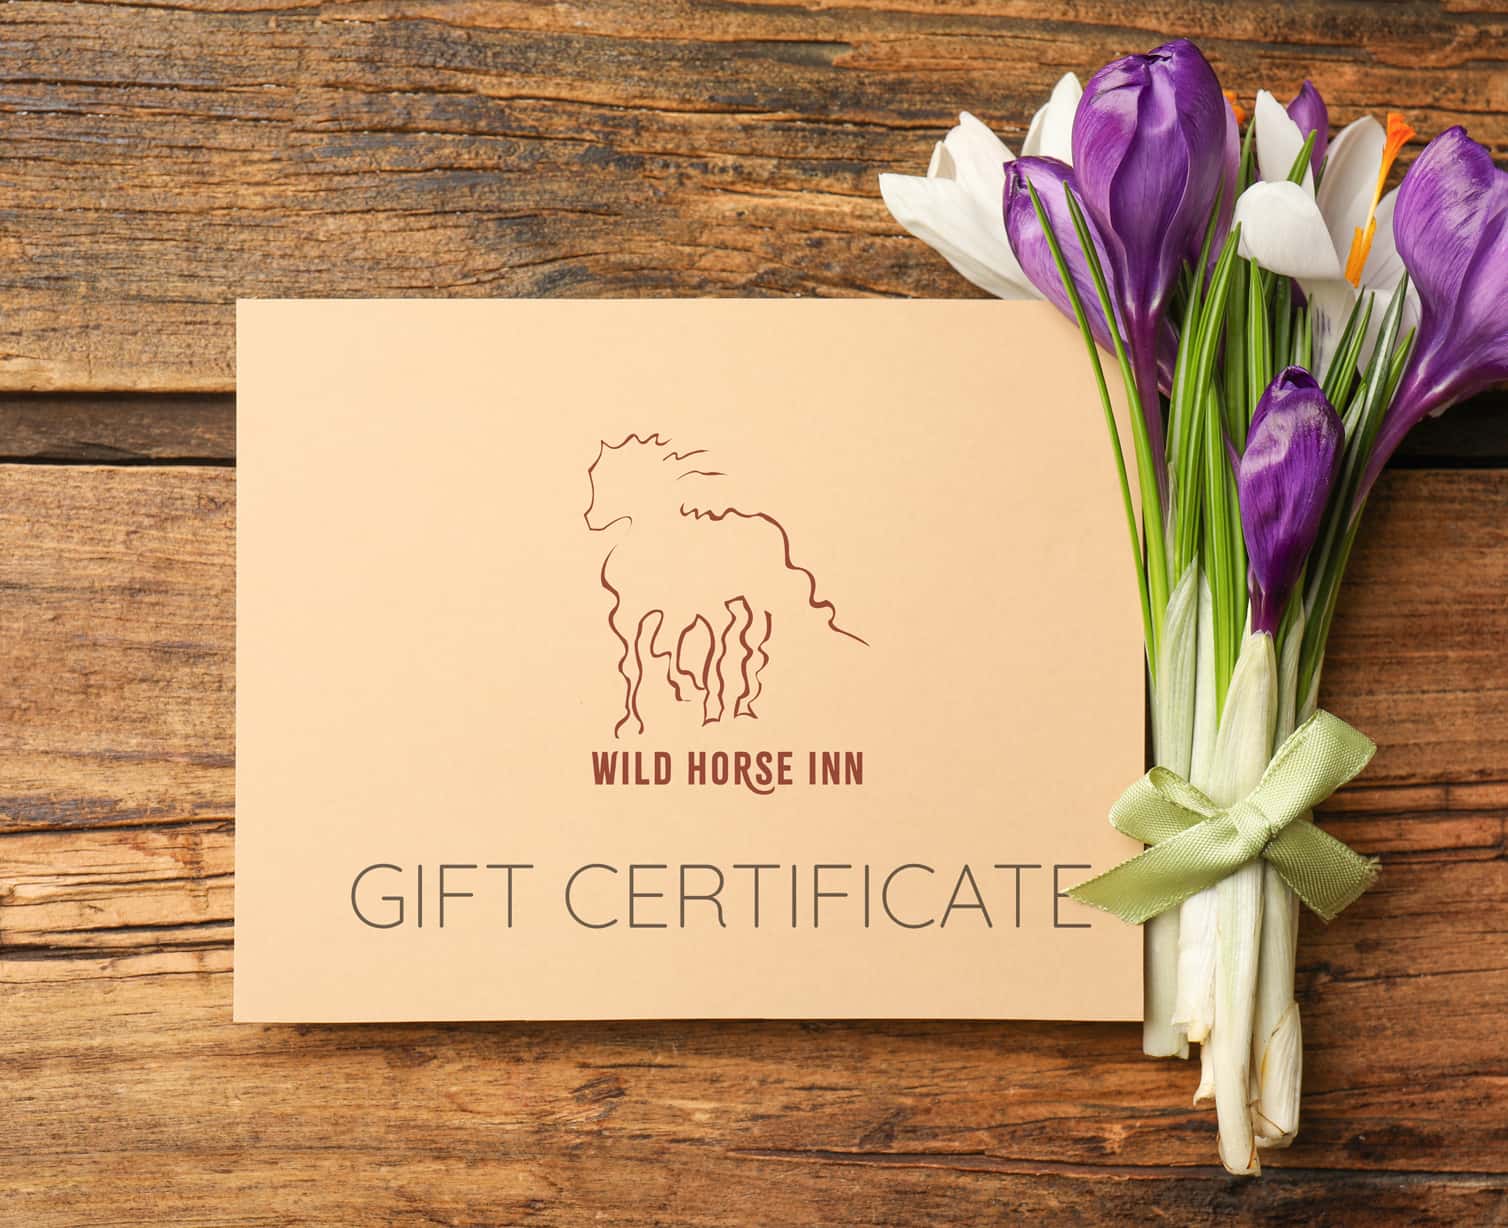 Wild Horse Inn Gift Certificate